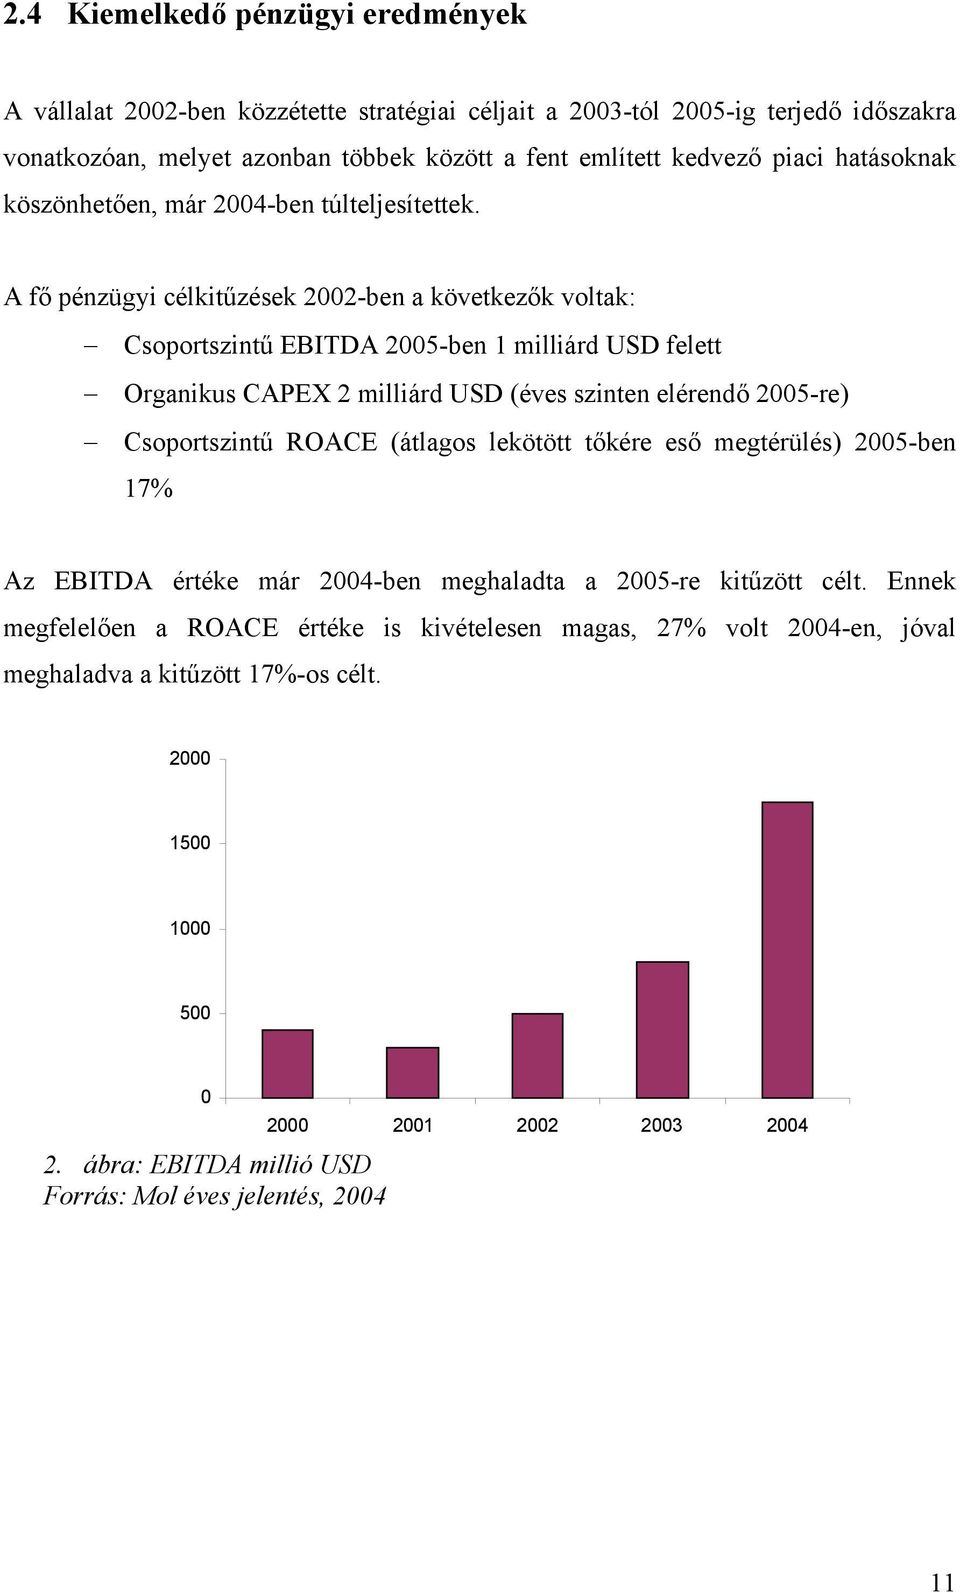 A fő pénzügyi célkitűzések 2002-ben a következők voltak: Csoportszintű EBITDA 2005-ben 1 milliárd USD felett Organikus CAPEX 2 milliárd USD (éves szinten elérendő 2005-re) Csoportszintű ROACE